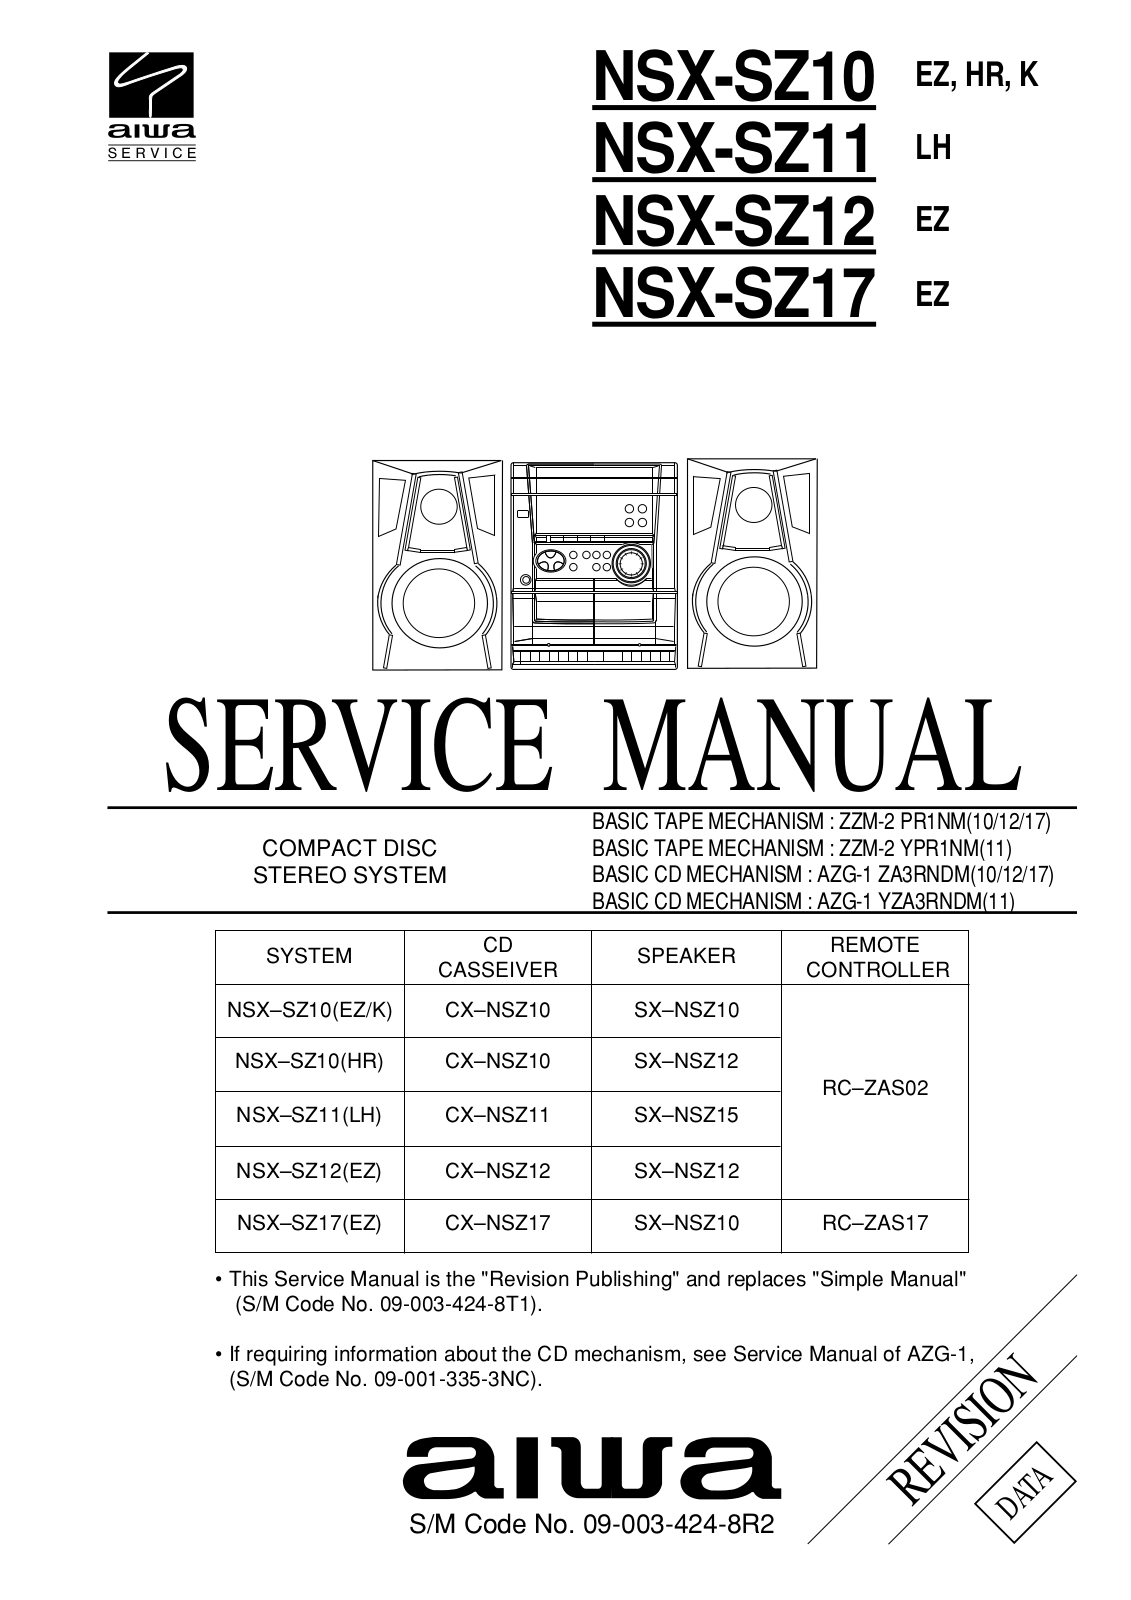 Aiwa NSX-SZ10, NSX-SZ11, NSX-SZ12, NSX-SZ17 Service Manual